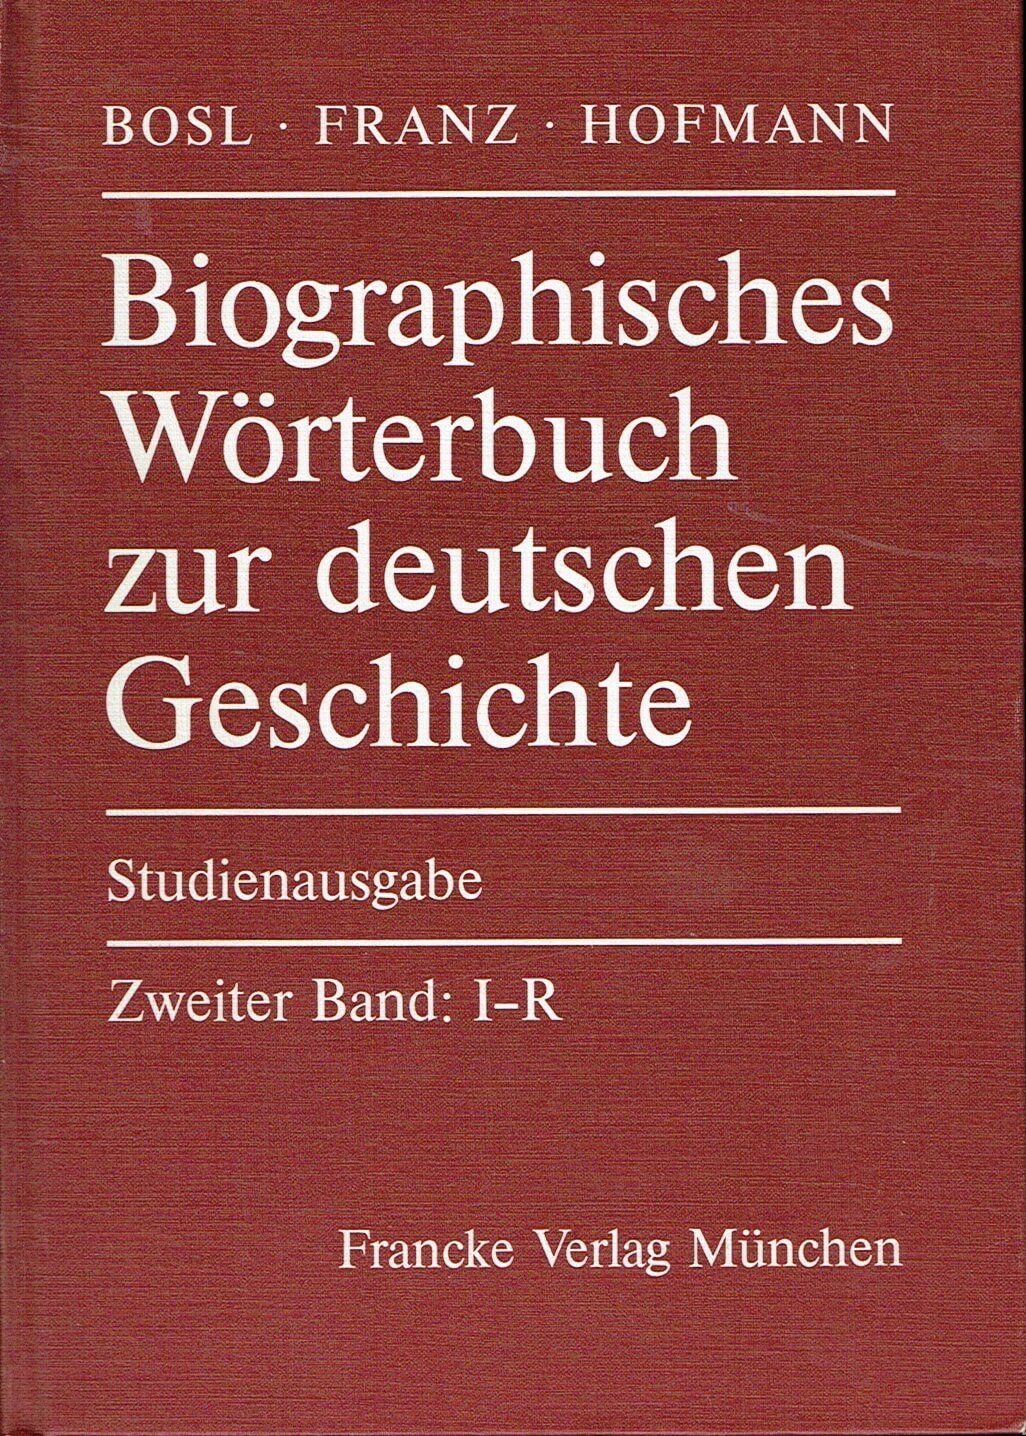 Biographisches Wörterbuch zur deutschen Geschichte Studienausgabe - Karl Bosl / Günther Franz